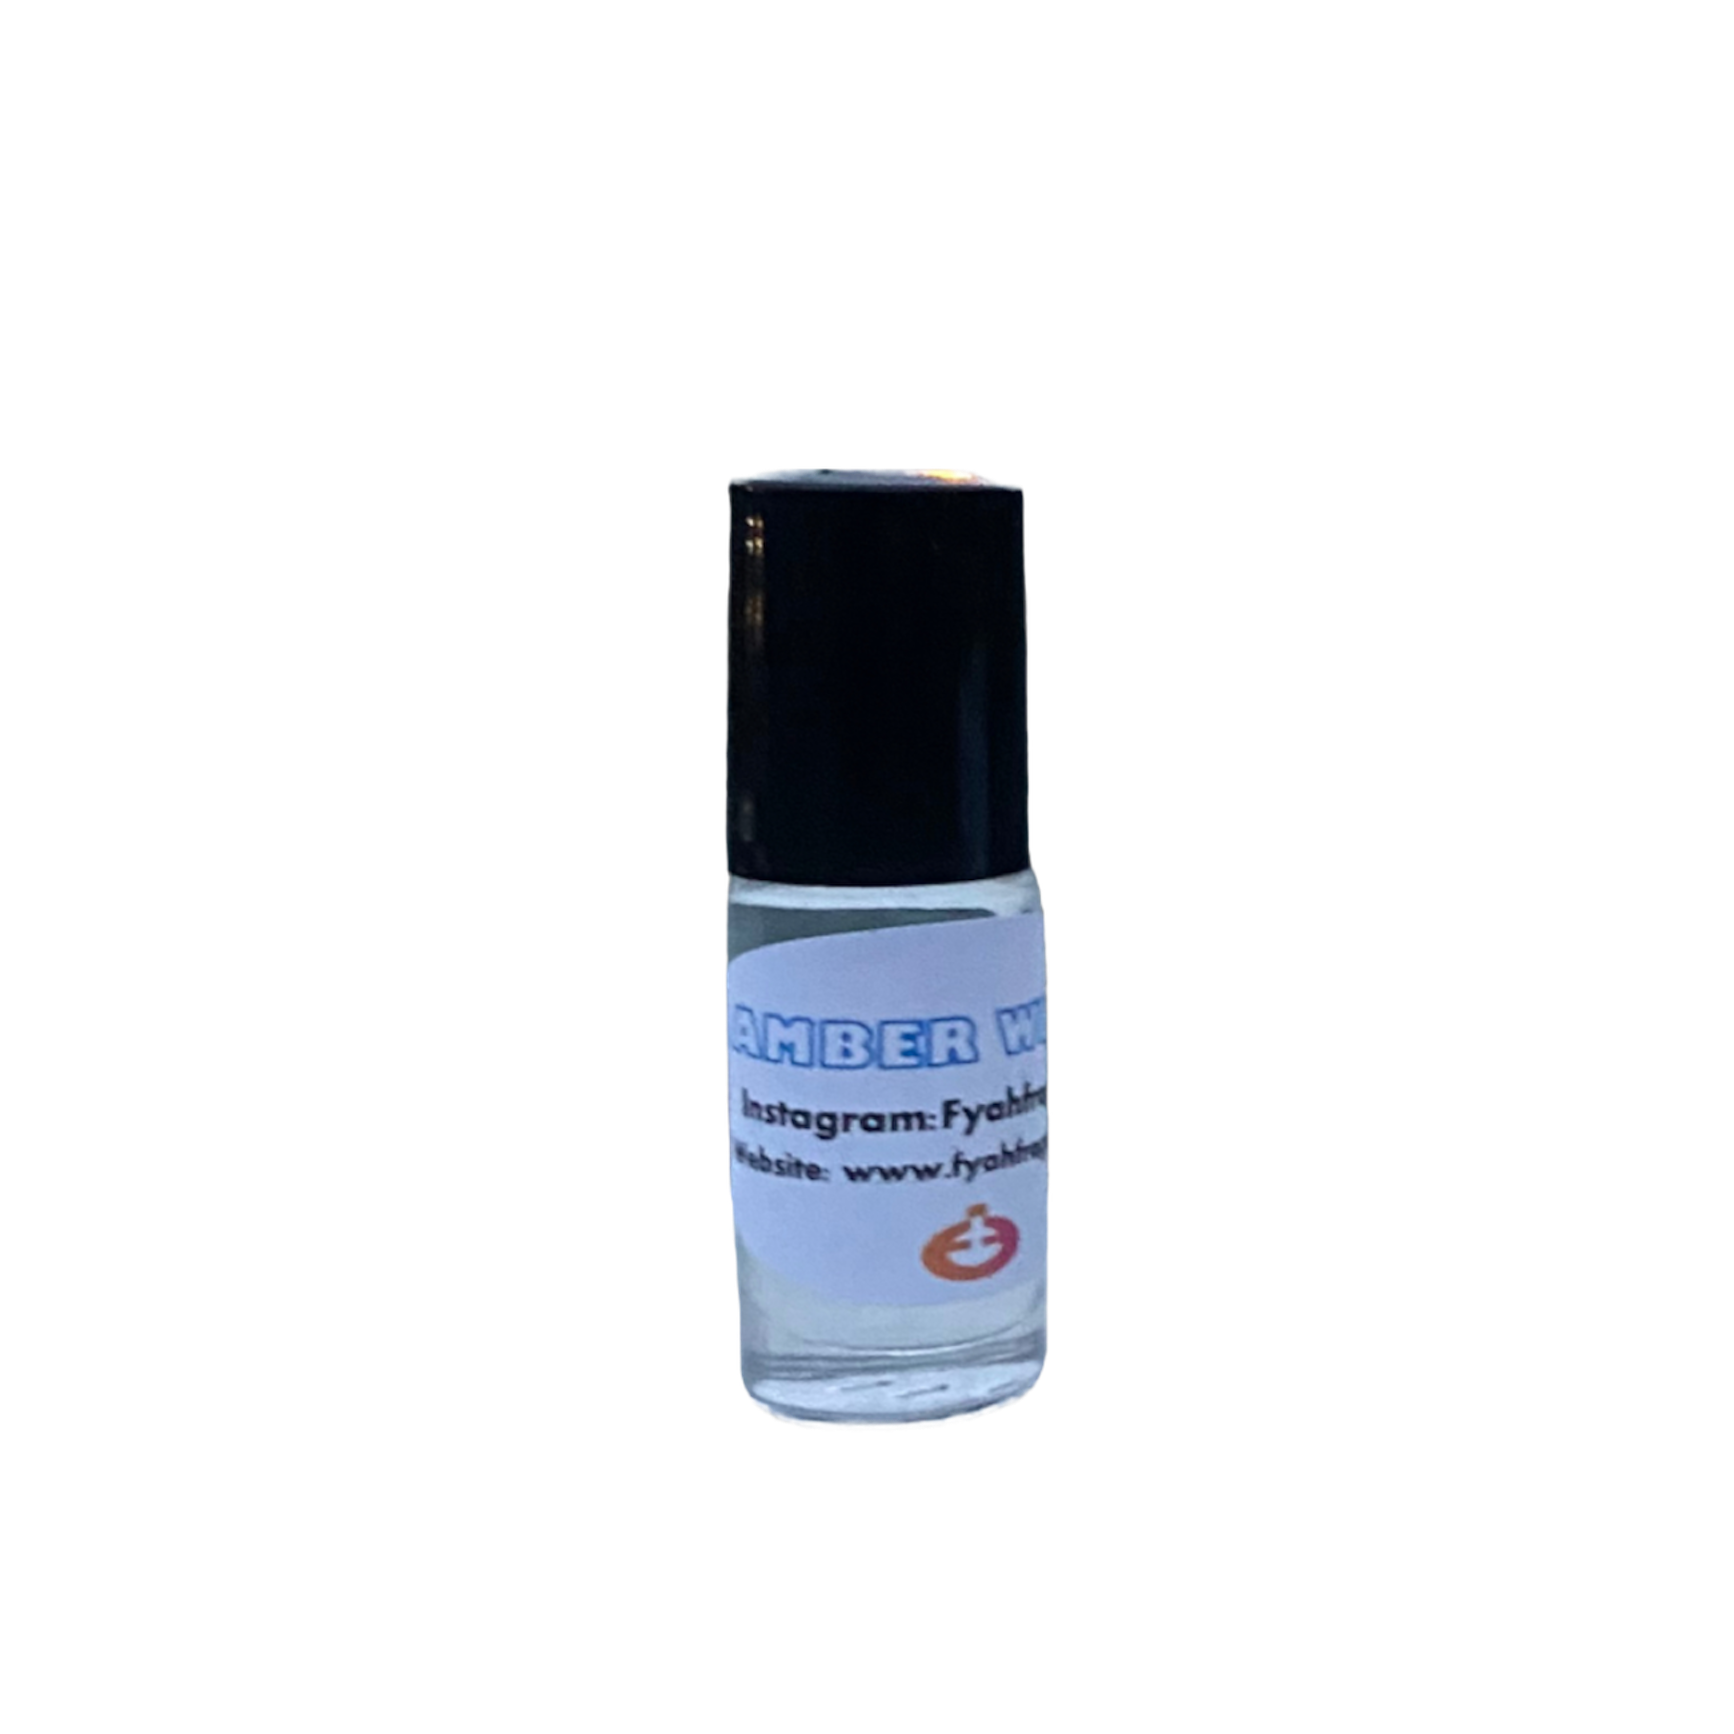 BLACK ICE Type Cologne Men Perfume Body Fragrance Oil Roll On1/3oz